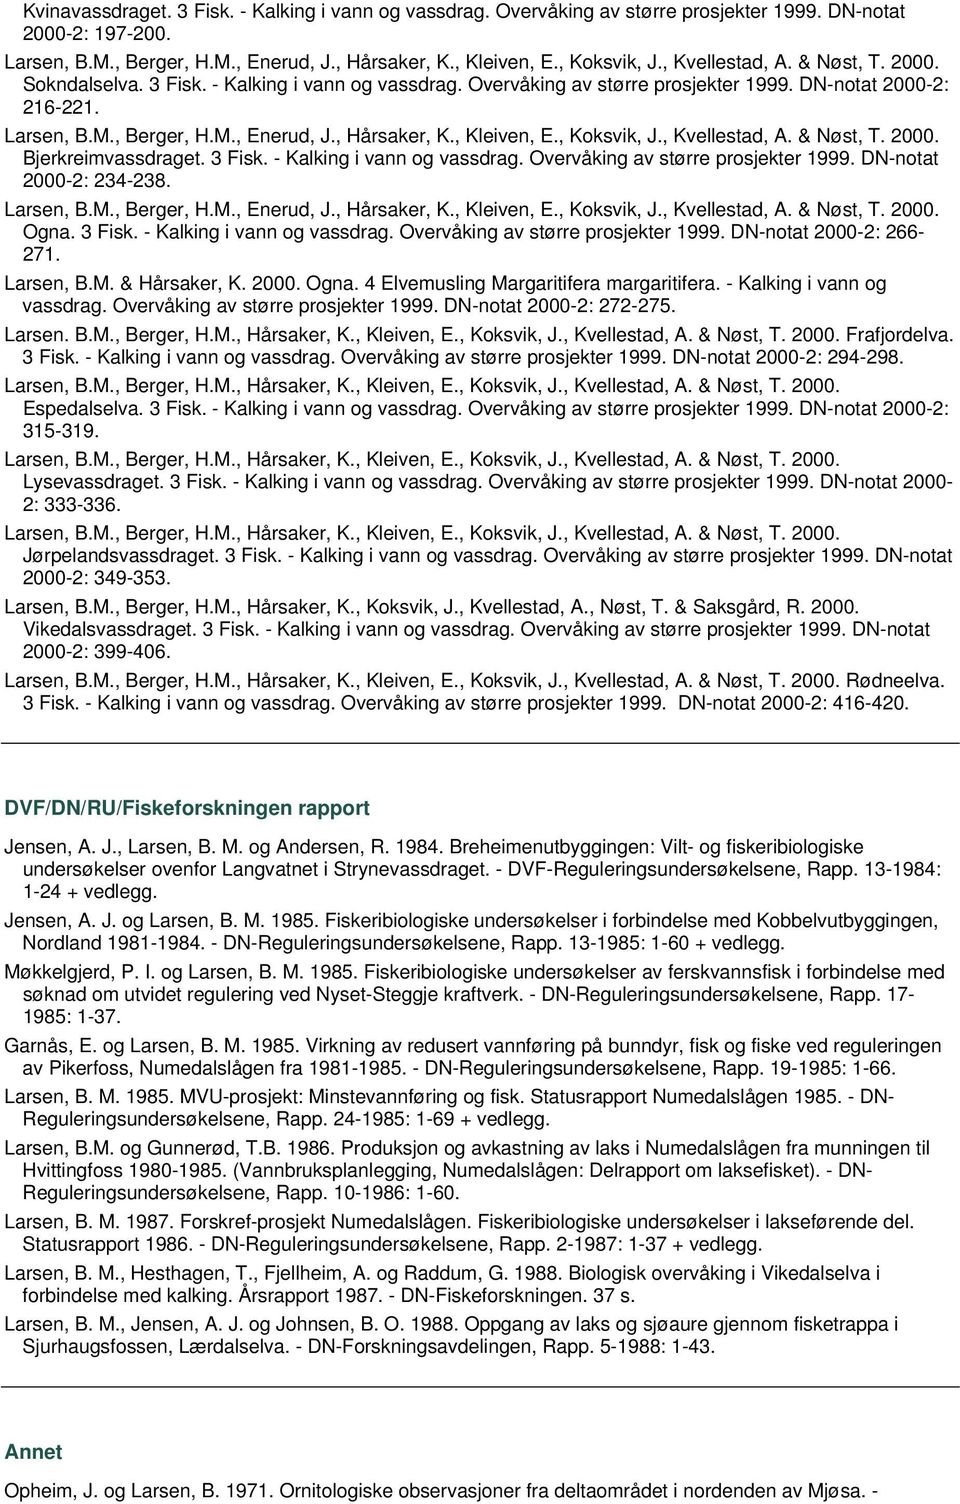 Larsen, B.M. & Hårsaker, K. 2000. Ogna. 4 Elvemusling Margaritifera margaritifera. - Kalking i vann og vassdrag. Overvåking av større prosjekter 1999. DN-notat 2000-2: 272-275. Larsen. B.M., Berger, H.